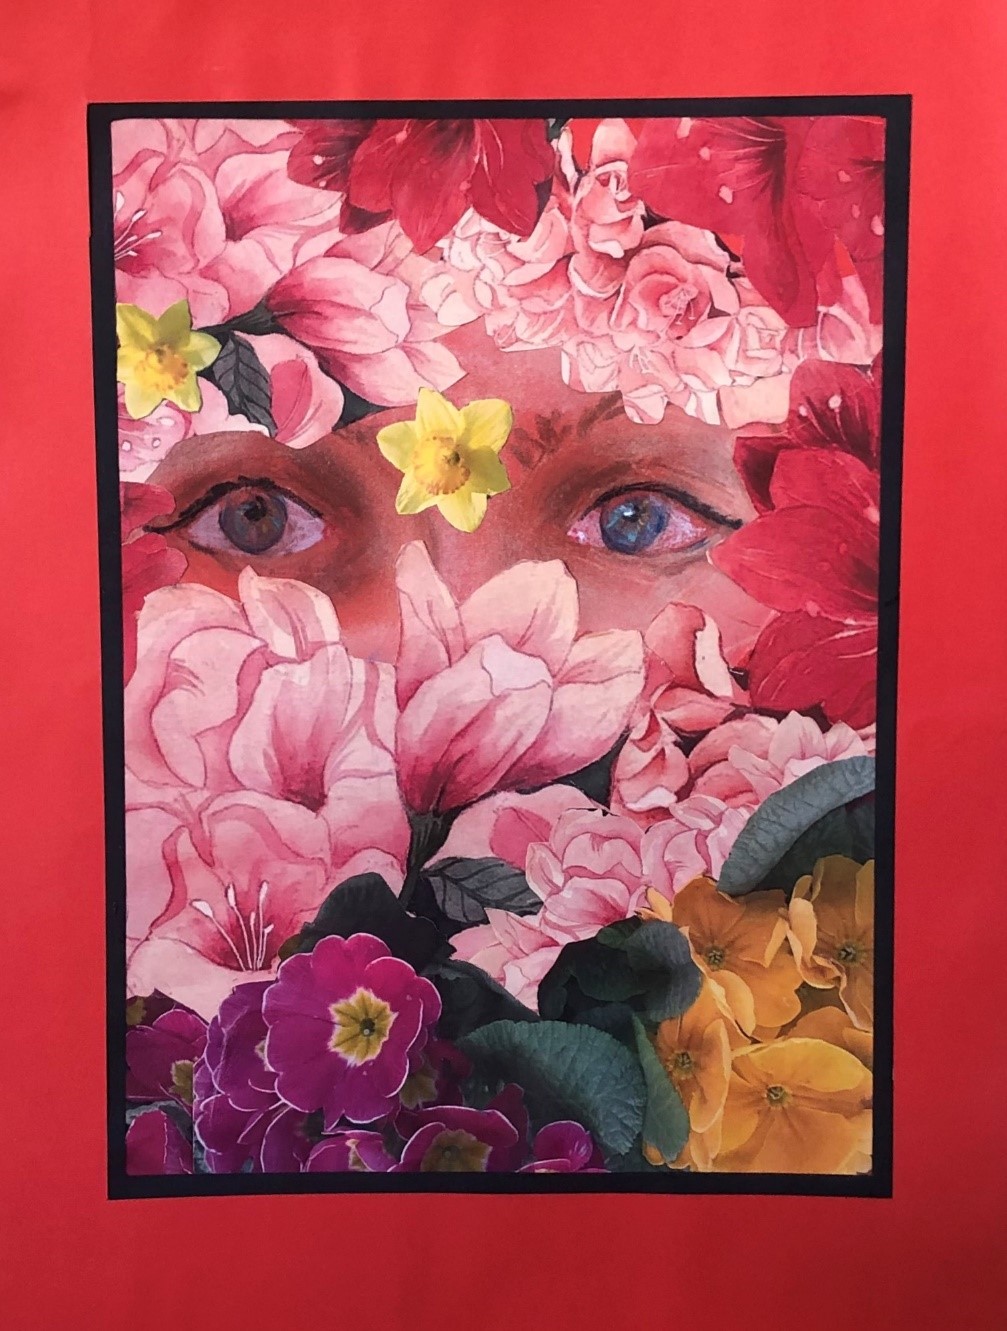 Fotografia 1 przedstawia nagrodzoną pracę autorstwa Pana Jerzego – Klienta DDP nr 1. Na zdjęciu widoczny obraz ukazujący niebieskie oczy pośród różowych, czerwonych, fioletowych i żółtych kwiatów. Obraz w czerwonej ramie